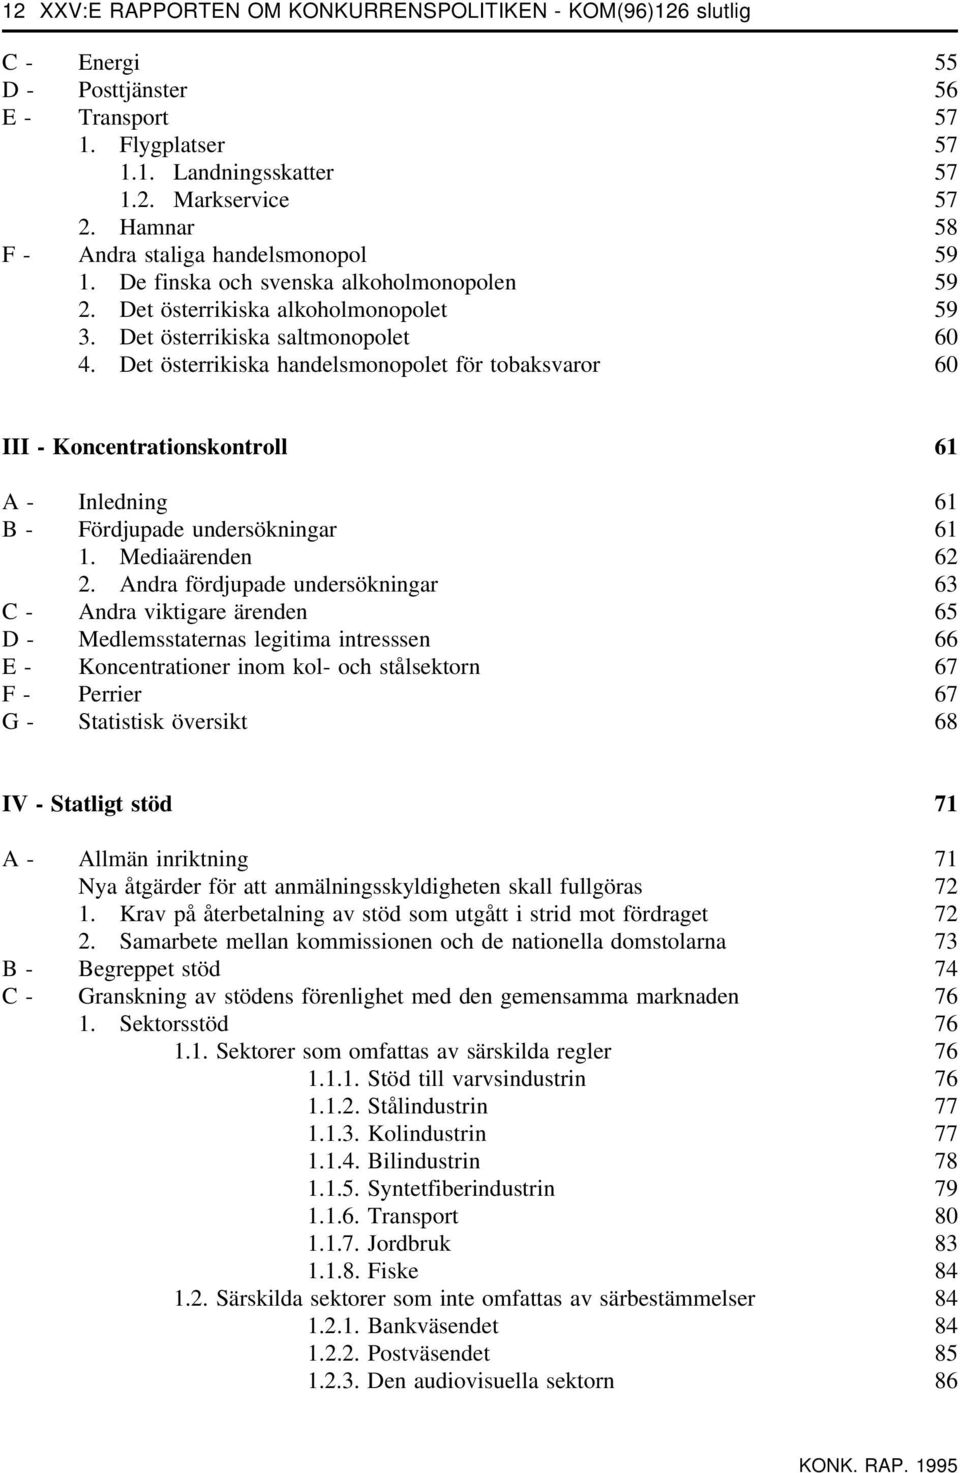 Det österrikiska handelsmonopolet för tobaksvaror 60 III - Koncentrationskontroll 61 A - Inledning 61 B - Fördjupade undersökningar 61 1. Mediaärenden 62 2.